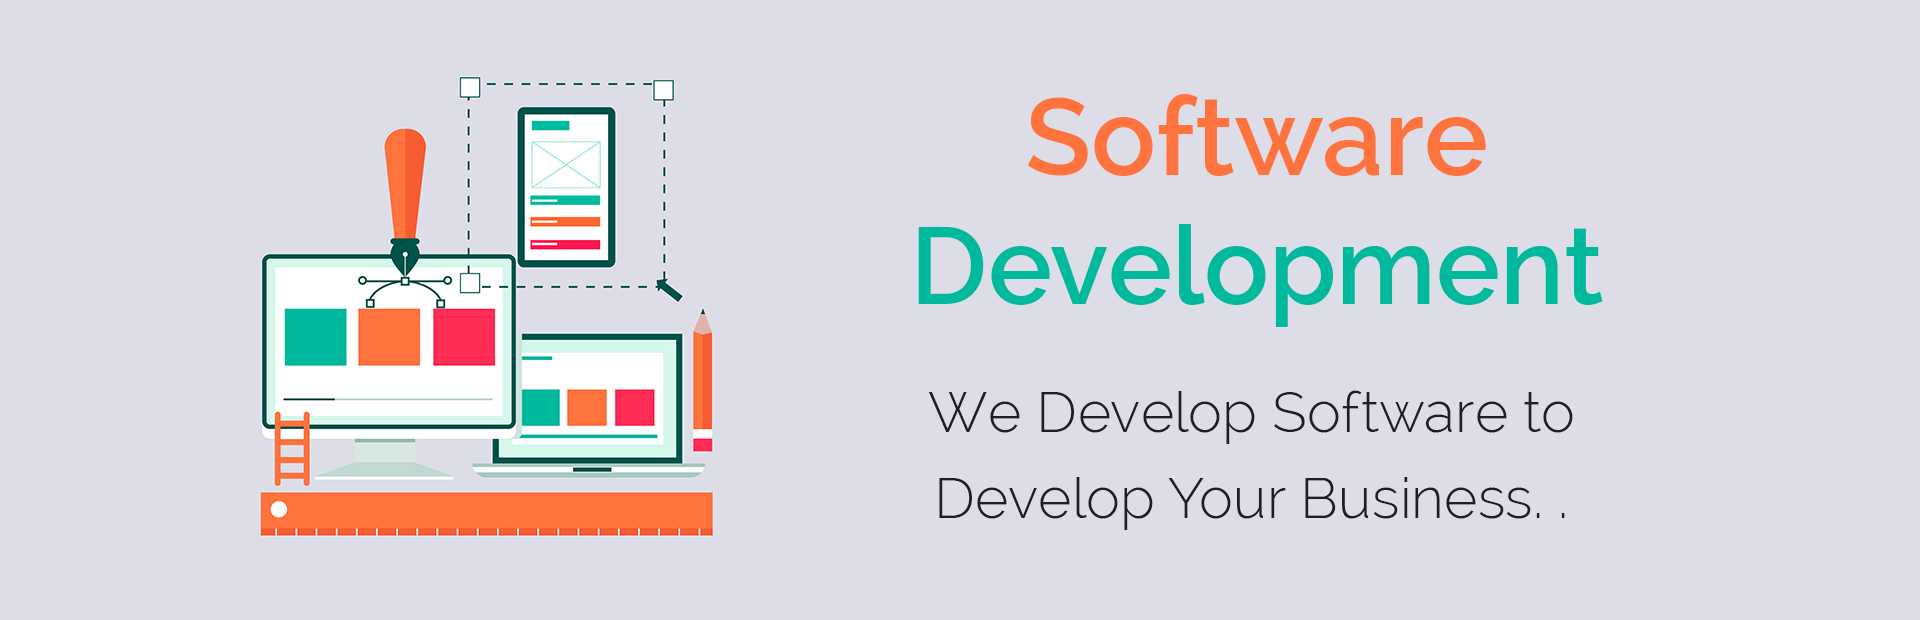 Software Development in Bargarh, Odisha